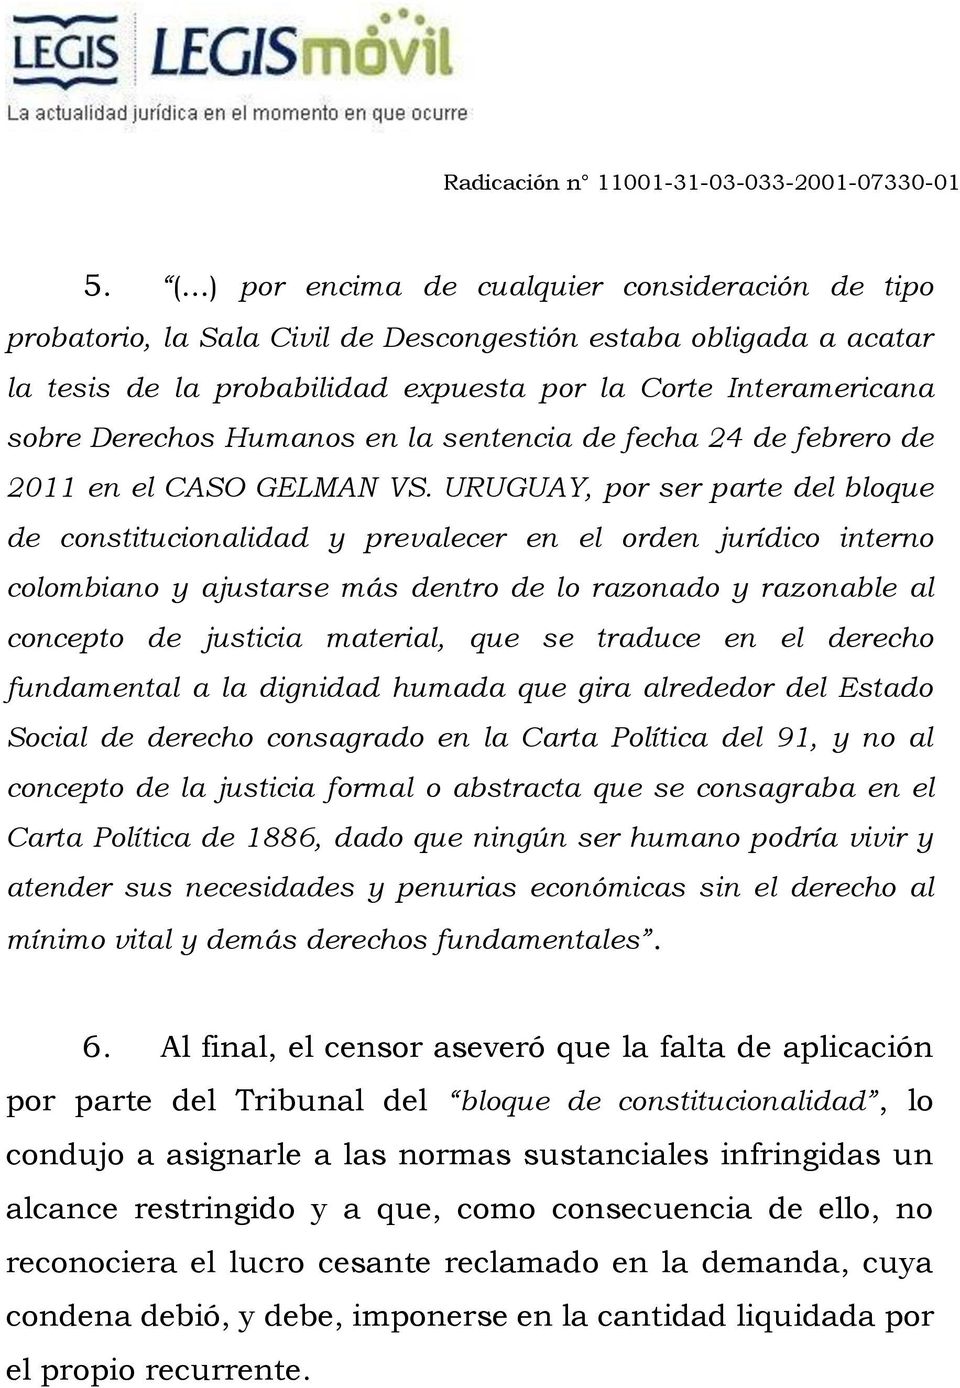 URUGUAY, por ser parte del bloque de constitucionalidad y prevalecer en el orden jurídico interno colombiano y ajustarse más dentro de lo razonado y razonable al concepto de justicia material, que se